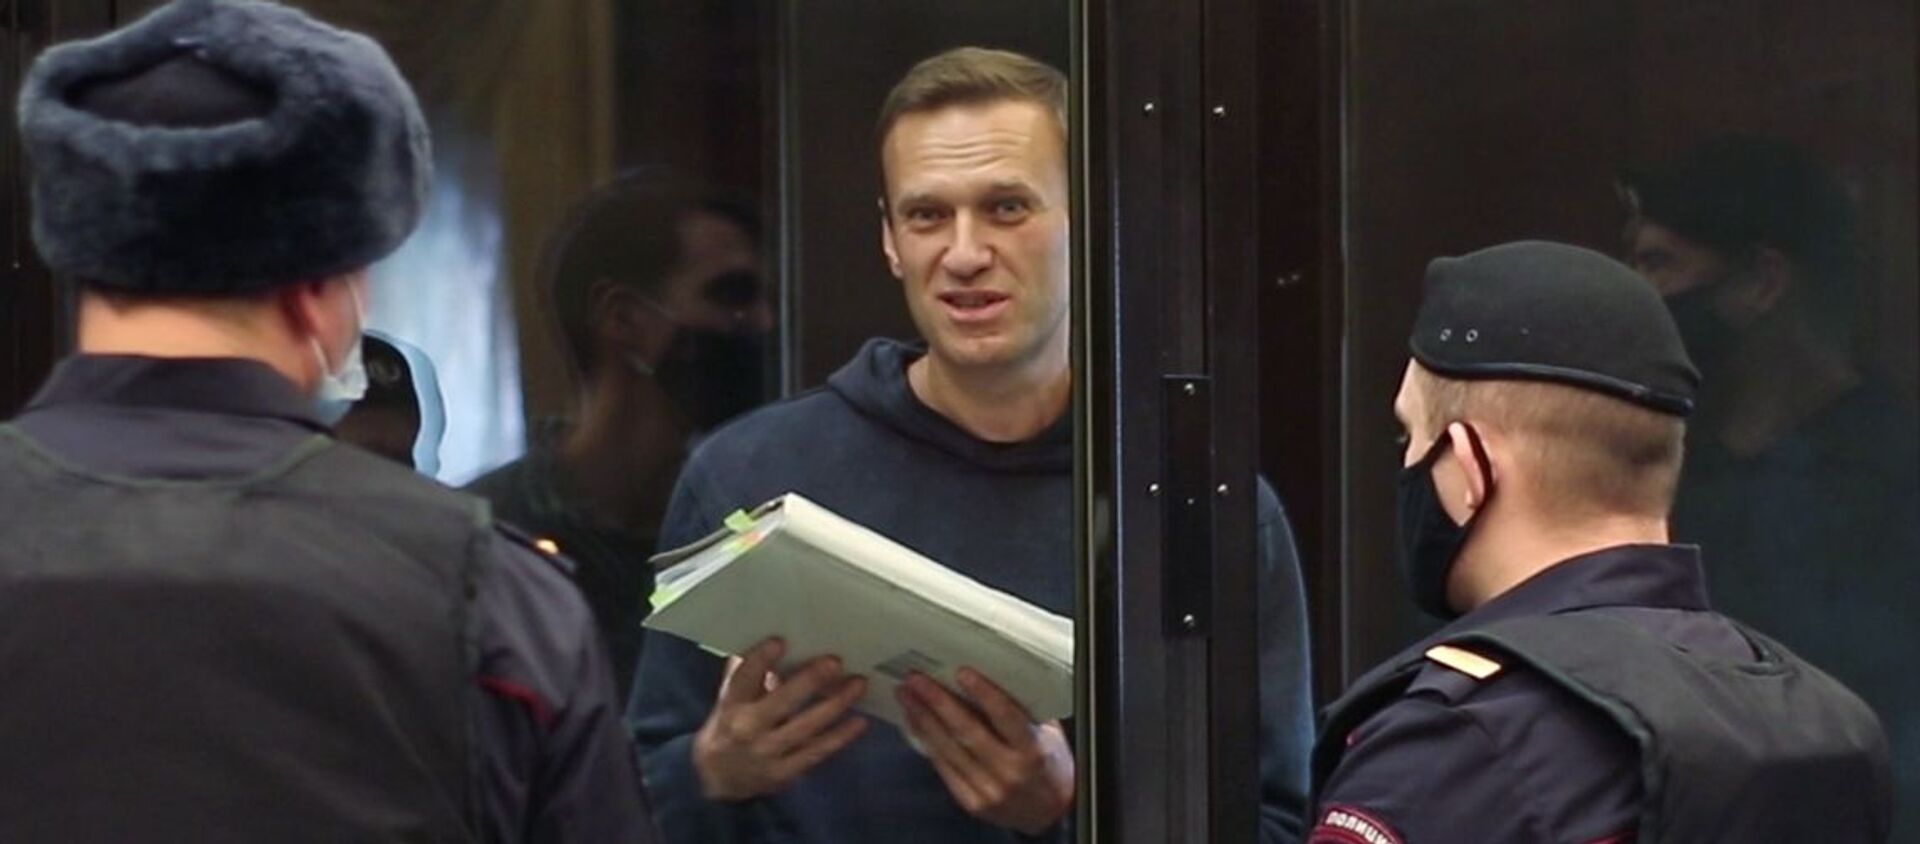 Ruski opozicionar Aleksej Navaljni tokom suđenja u Moskovskom gradskom sudu - Sputnik Srbija, 1920, 09.06.2021